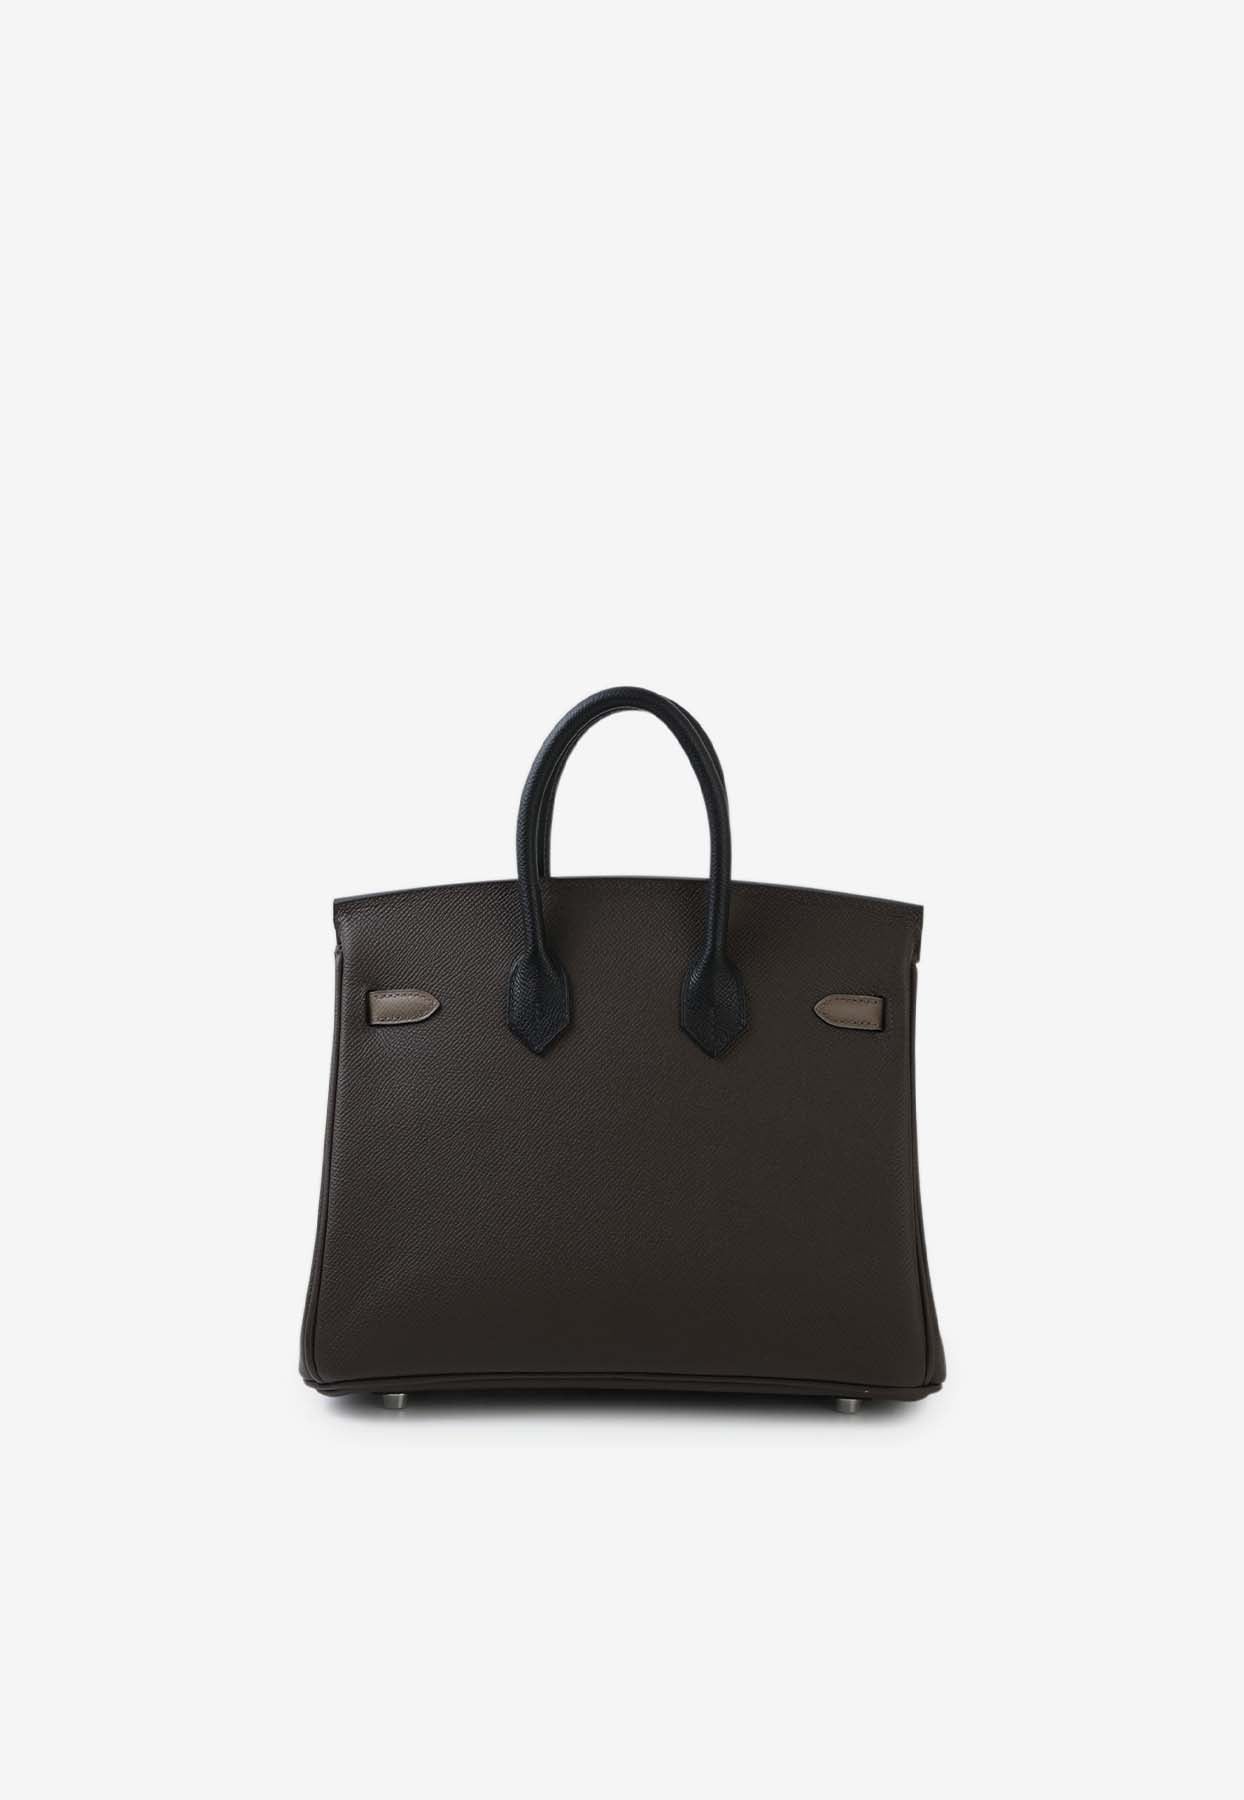 Shop Hermes Birkin 25 In Ecorce, Etoupe And Black Epsom Leather With Palladium Hardware